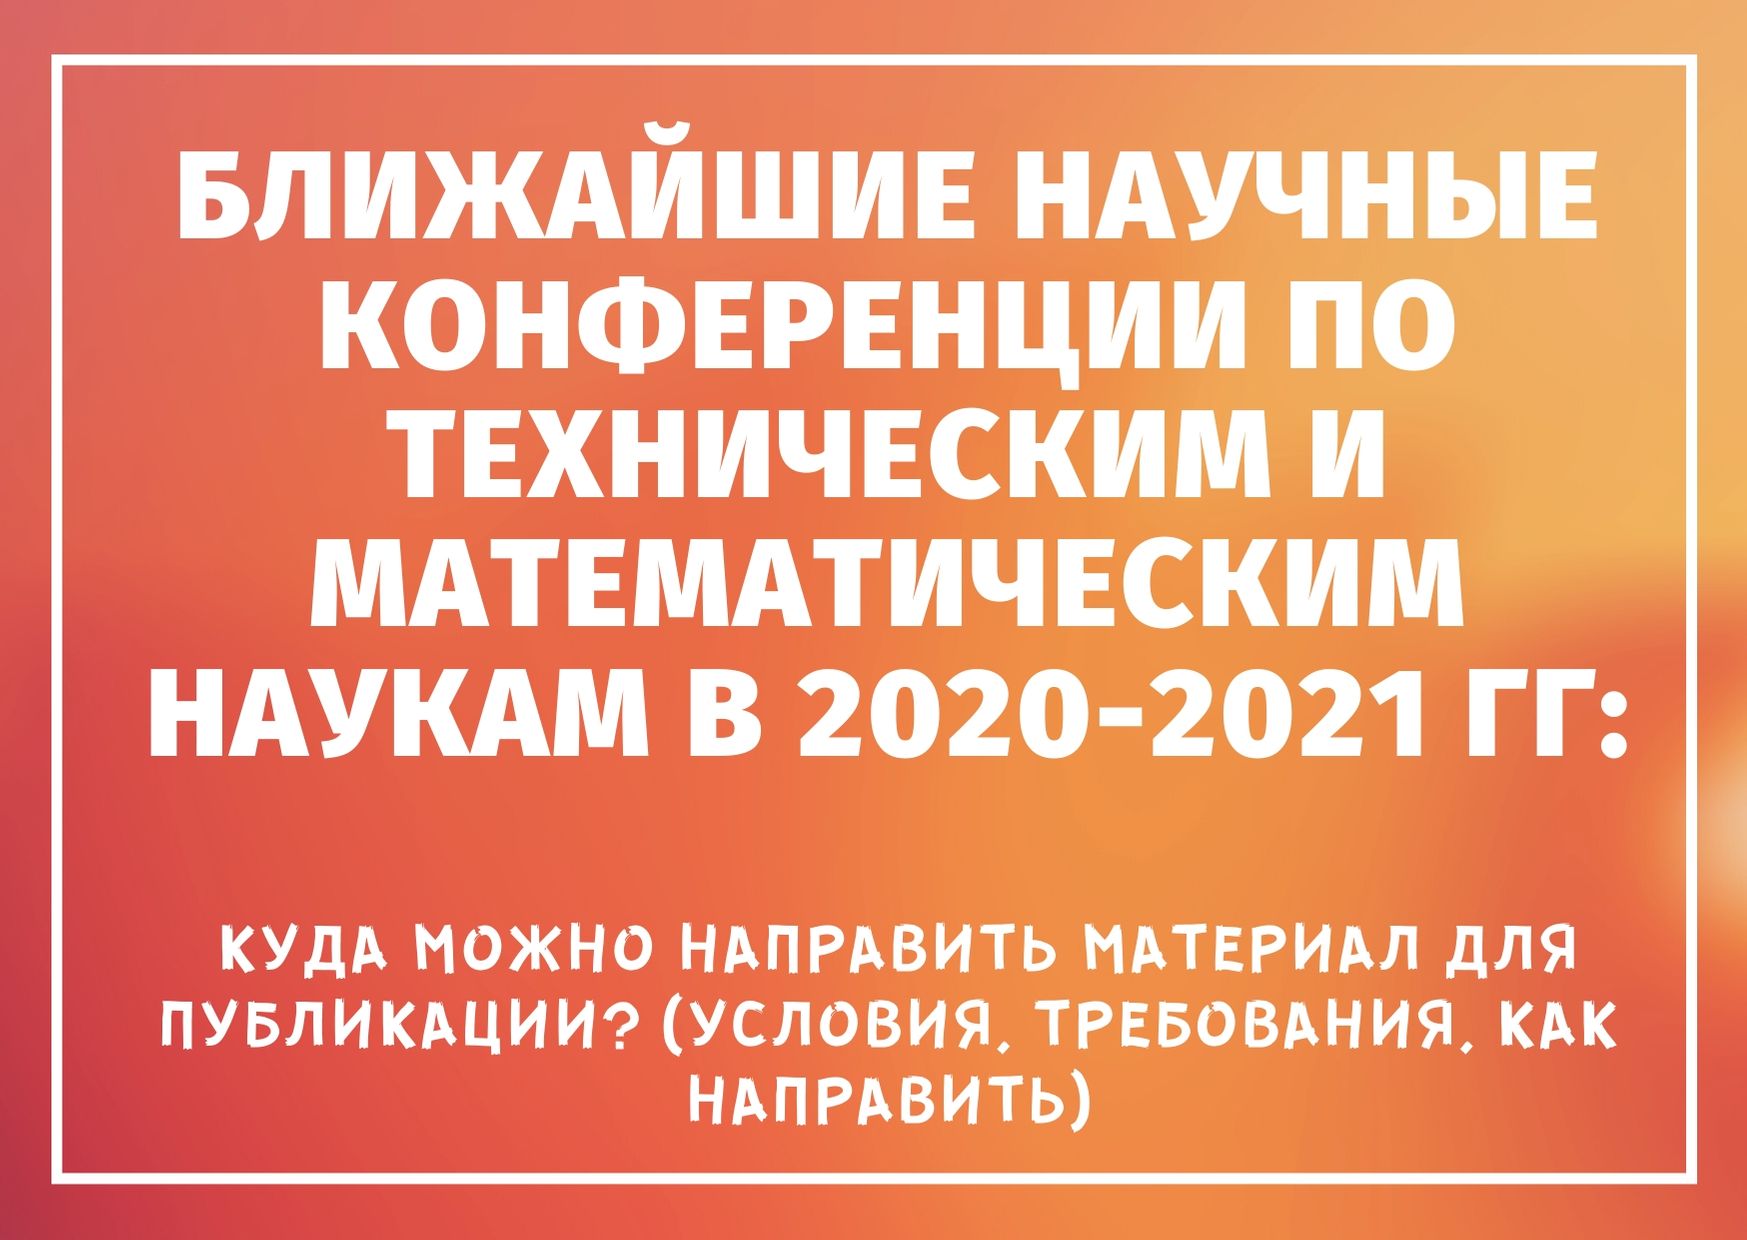 Ближайшие научные конференции по техническим и математическим наукам в 2020-2021 гг: куда можно направить материал для публикации? (условия, требования, как направить)